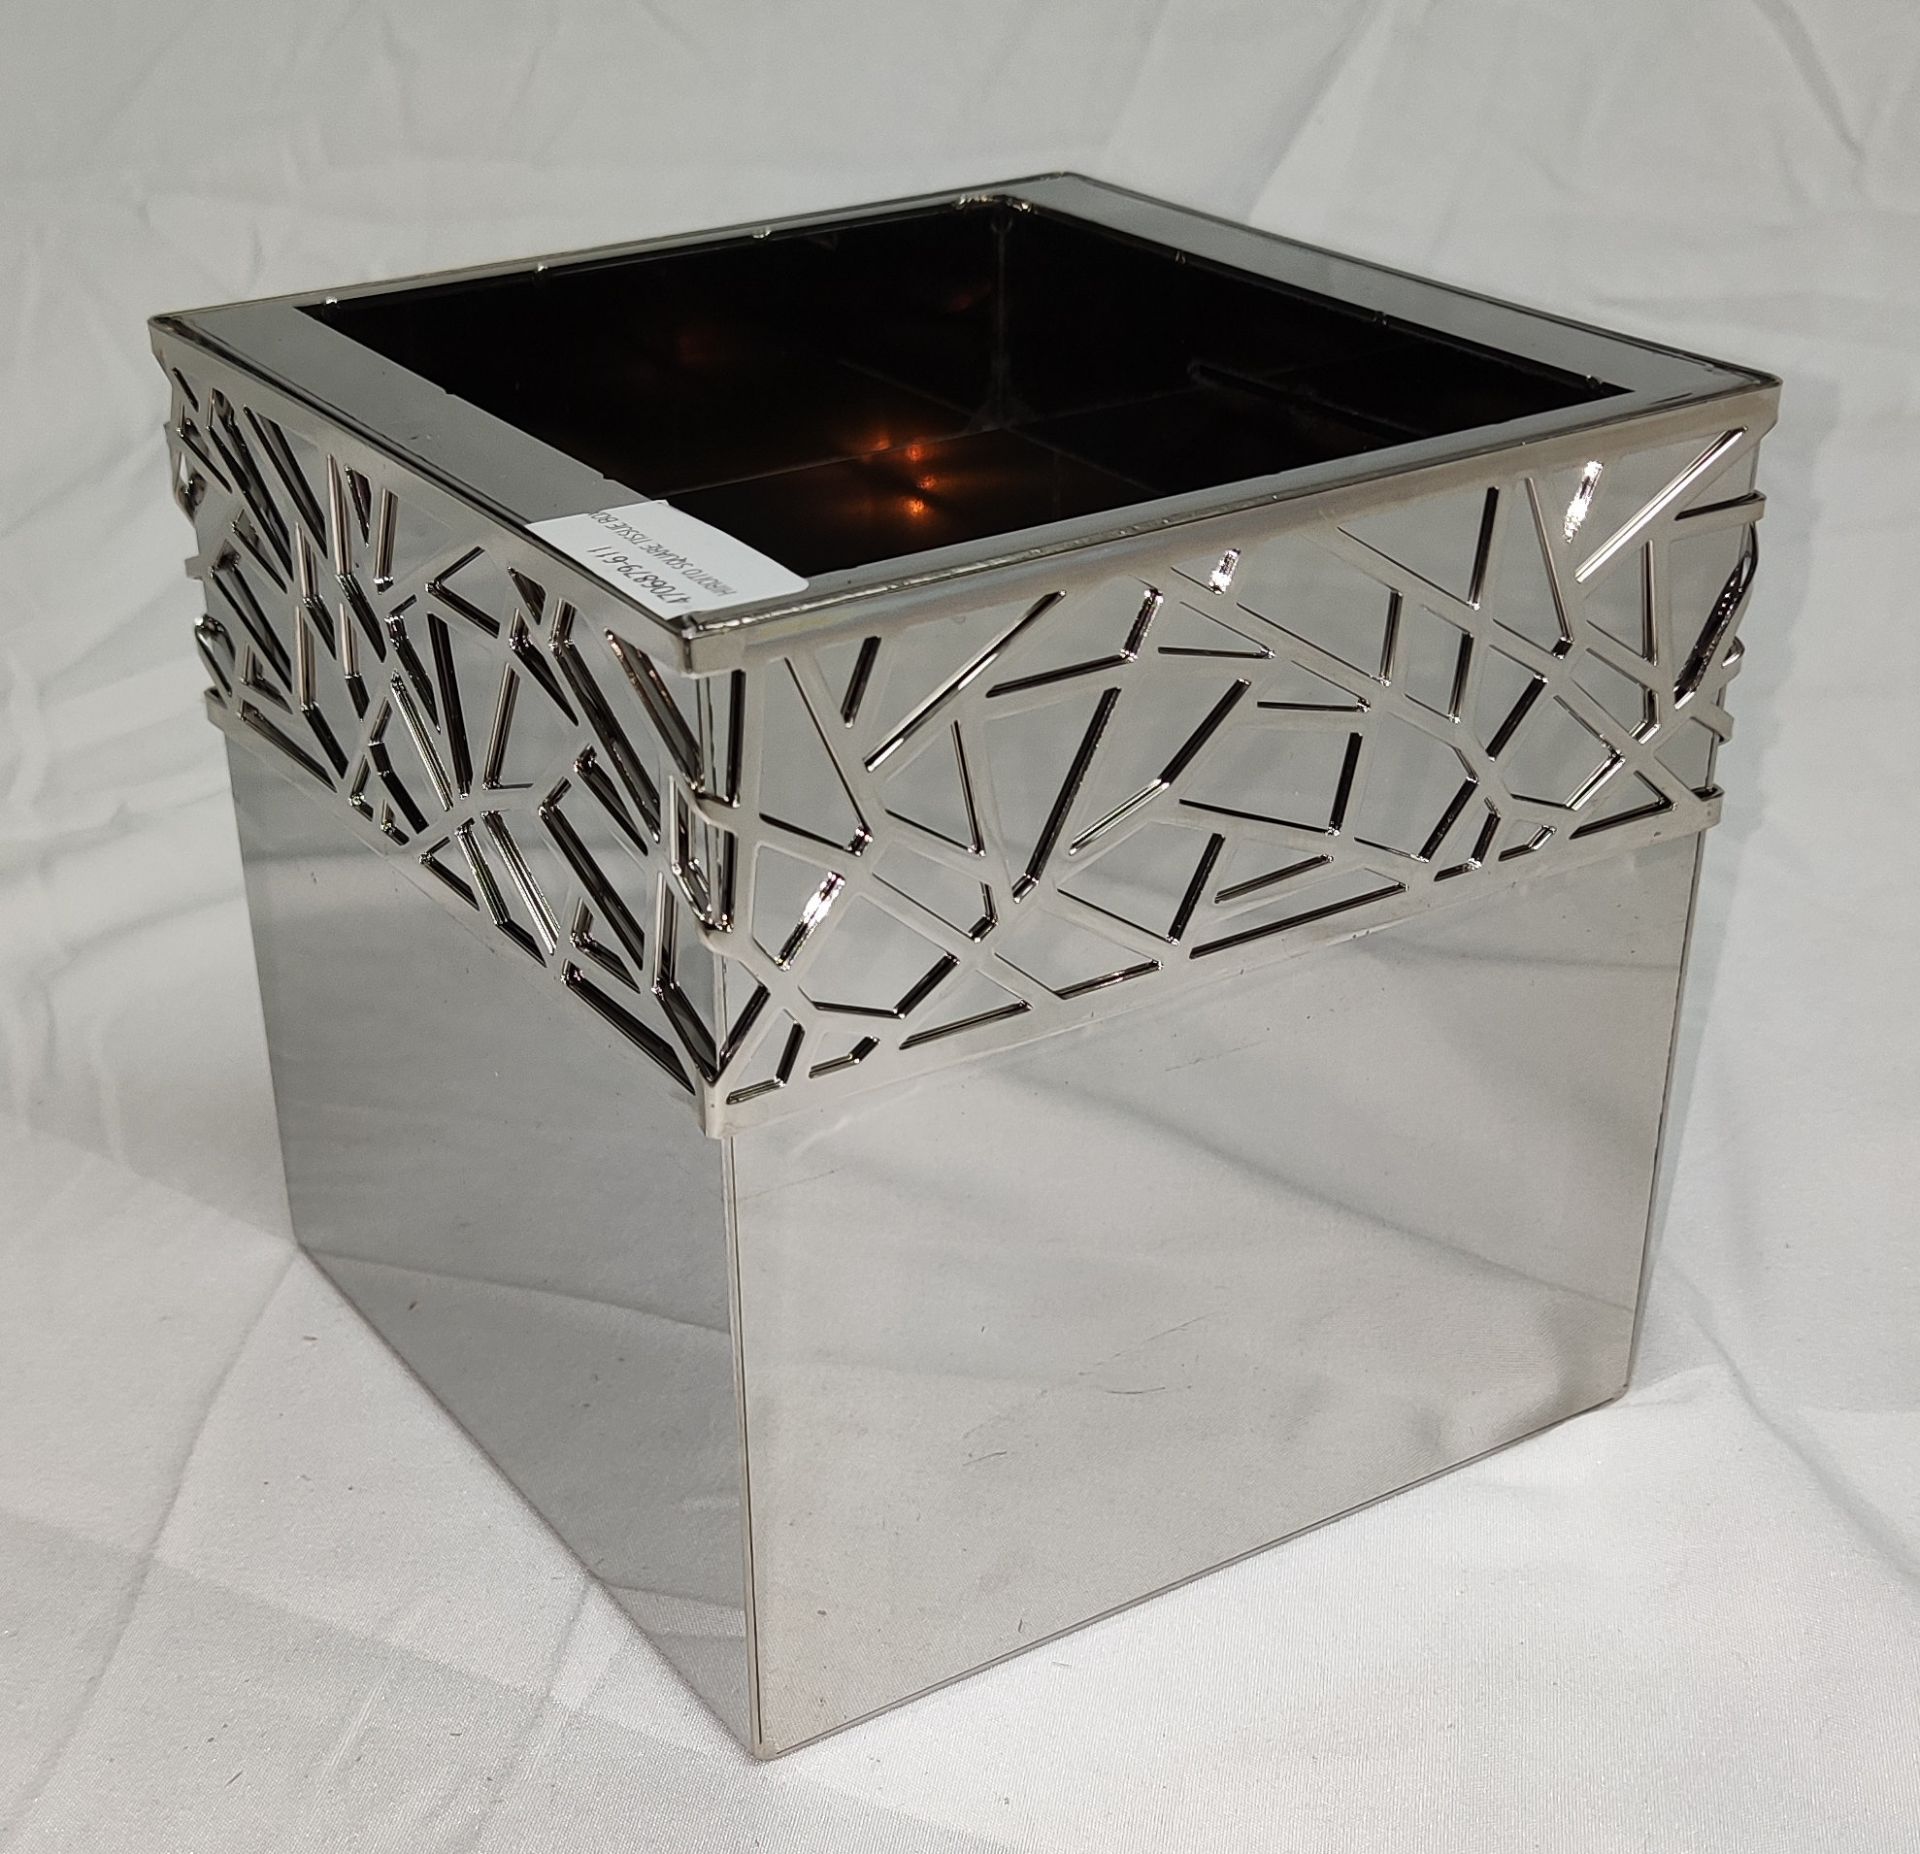 1 x VILLARI Hiroito Square Tissue Box - Chrome Plated - Boxed - Original RRP £529 - Ref: 6125321/ - Image 5 of 17